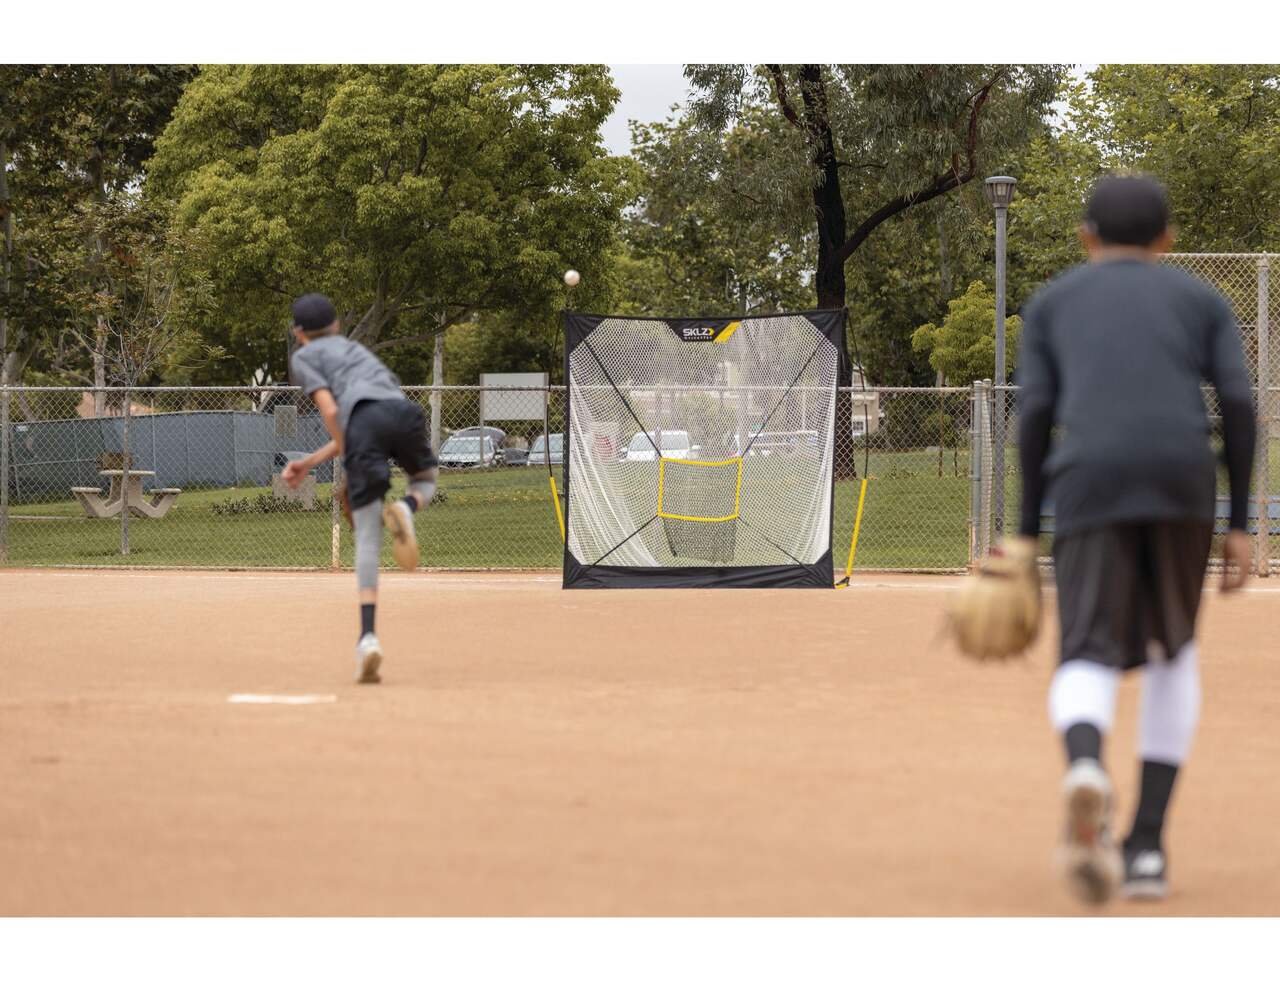 SKLZ Quickster Baseball Hitting Net, 7-ft x 7-ft